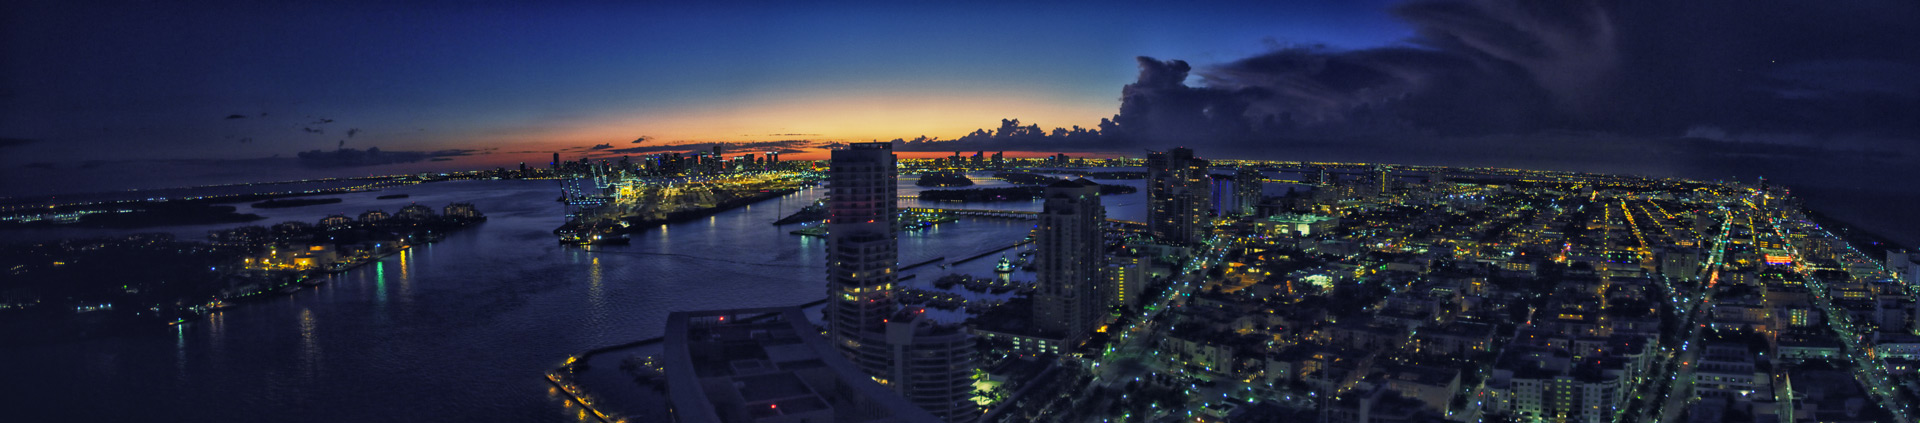 Miami Panoramic Series